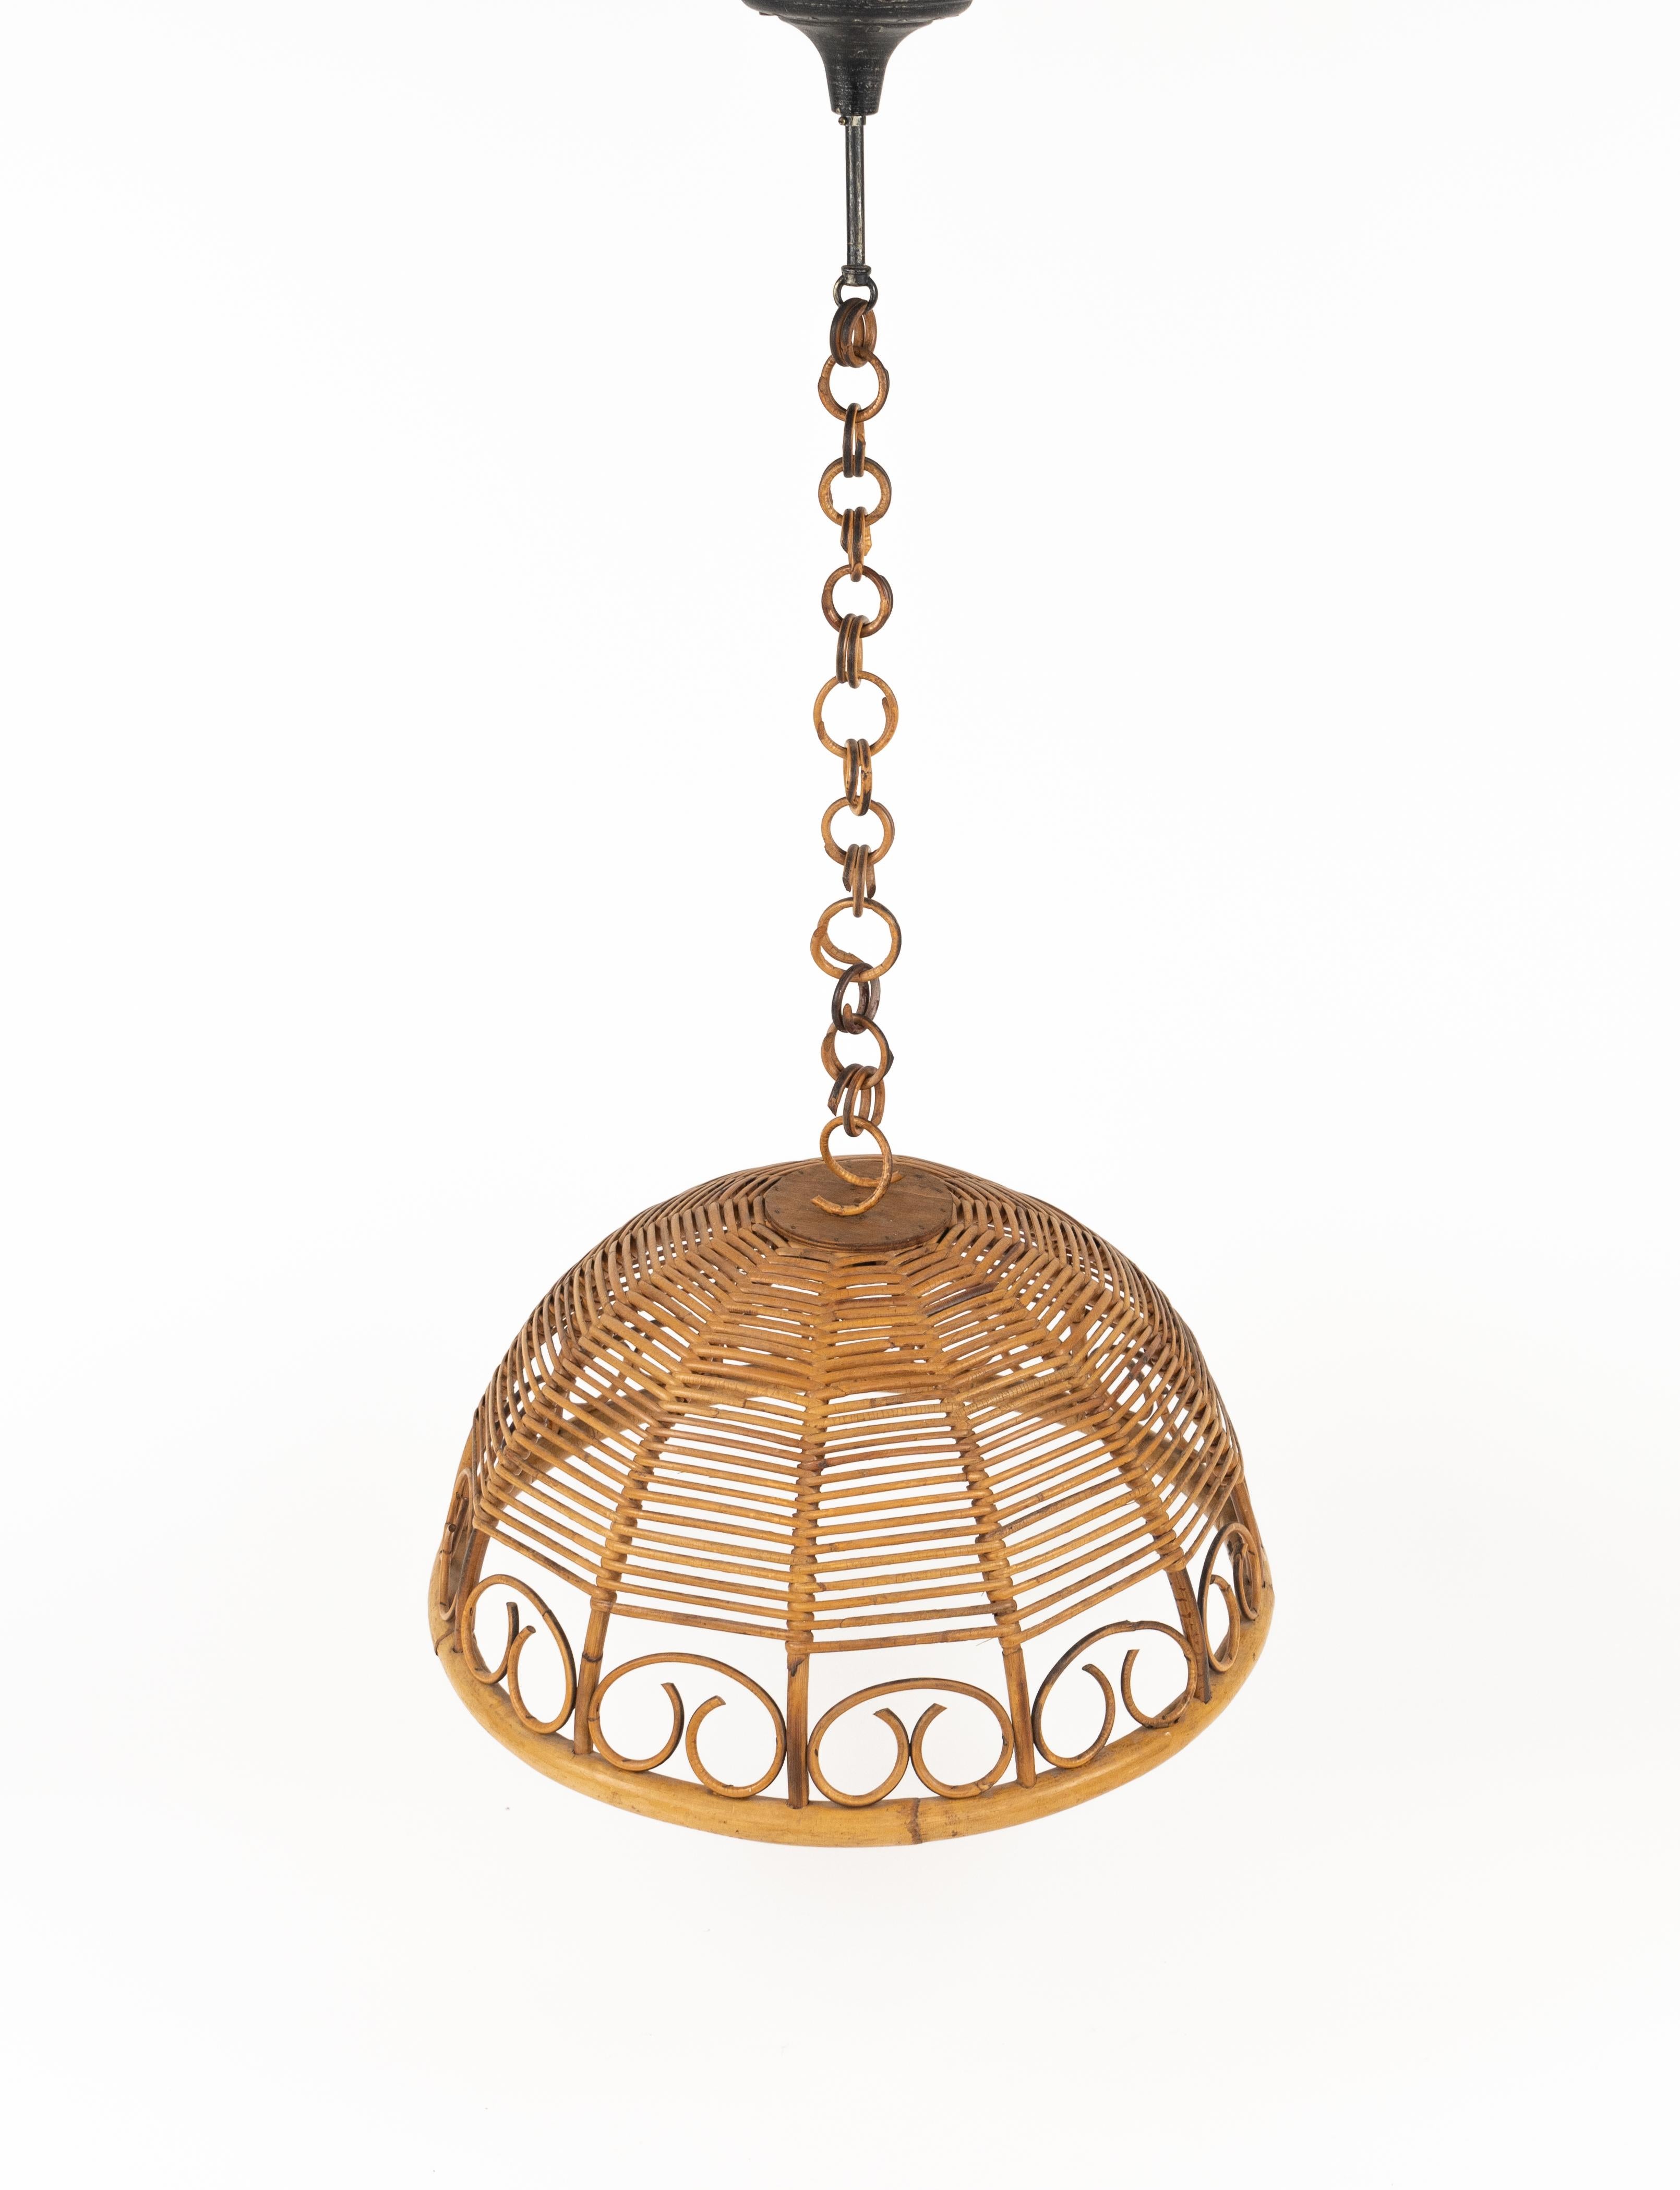 Magnifique lustre artisanal du milieu du siècle en rotin et bambou avec chaîne en rotin.

Fabriqué en Italie dans les années 1960.  

Il sera magnifique suspendu au-dessus de la table de la cuisine ou de la salle à manger, mais aussi placé dans une